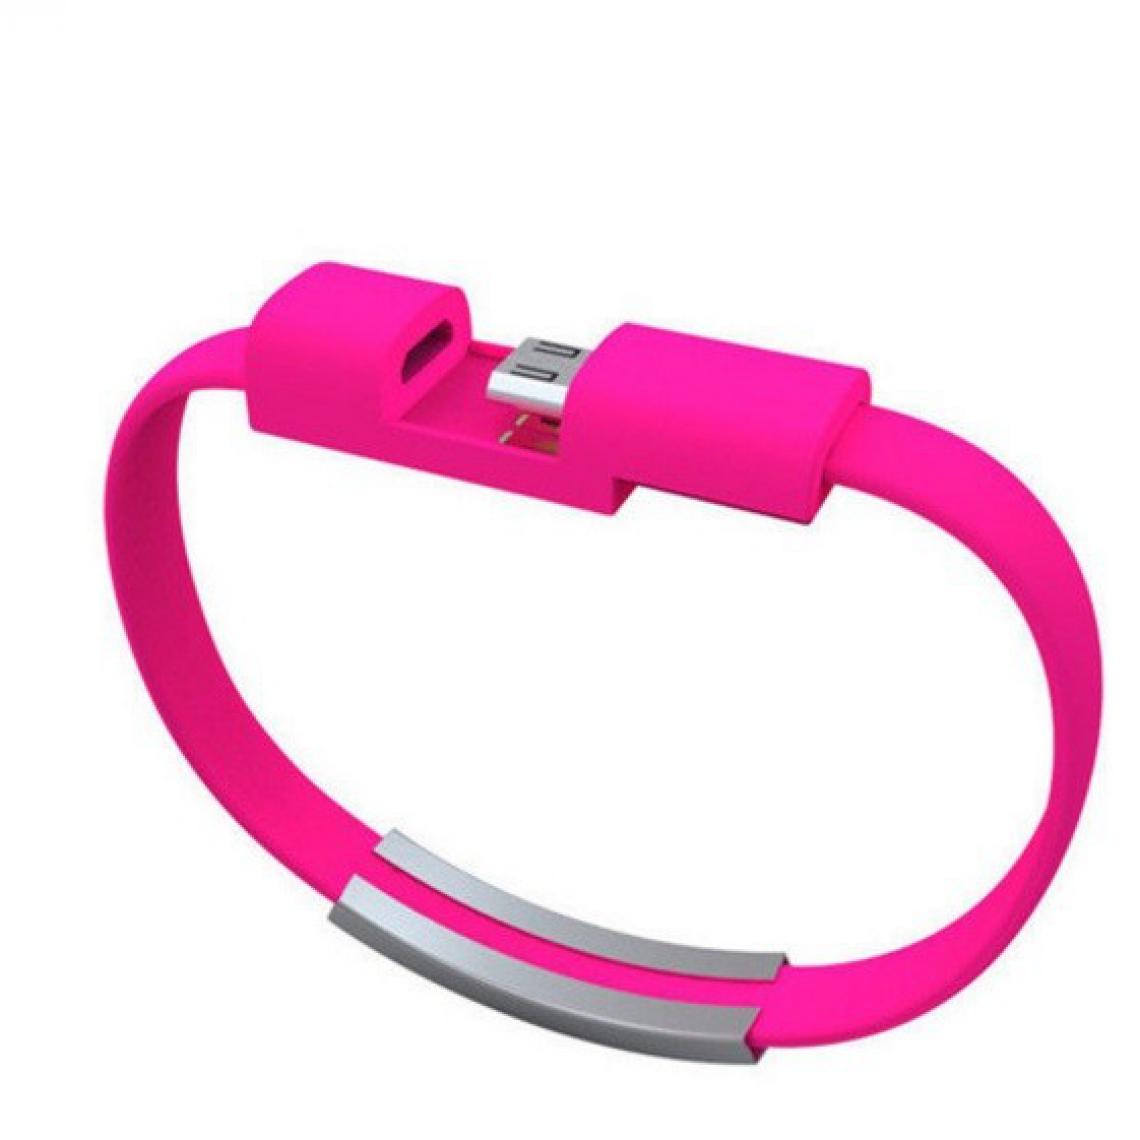 Shot - Cable Bracelet Micro USB pour GIONEE F9 Android Chargeur USB 25cm (ROSE BONBON) - Autres accessoires smartphone